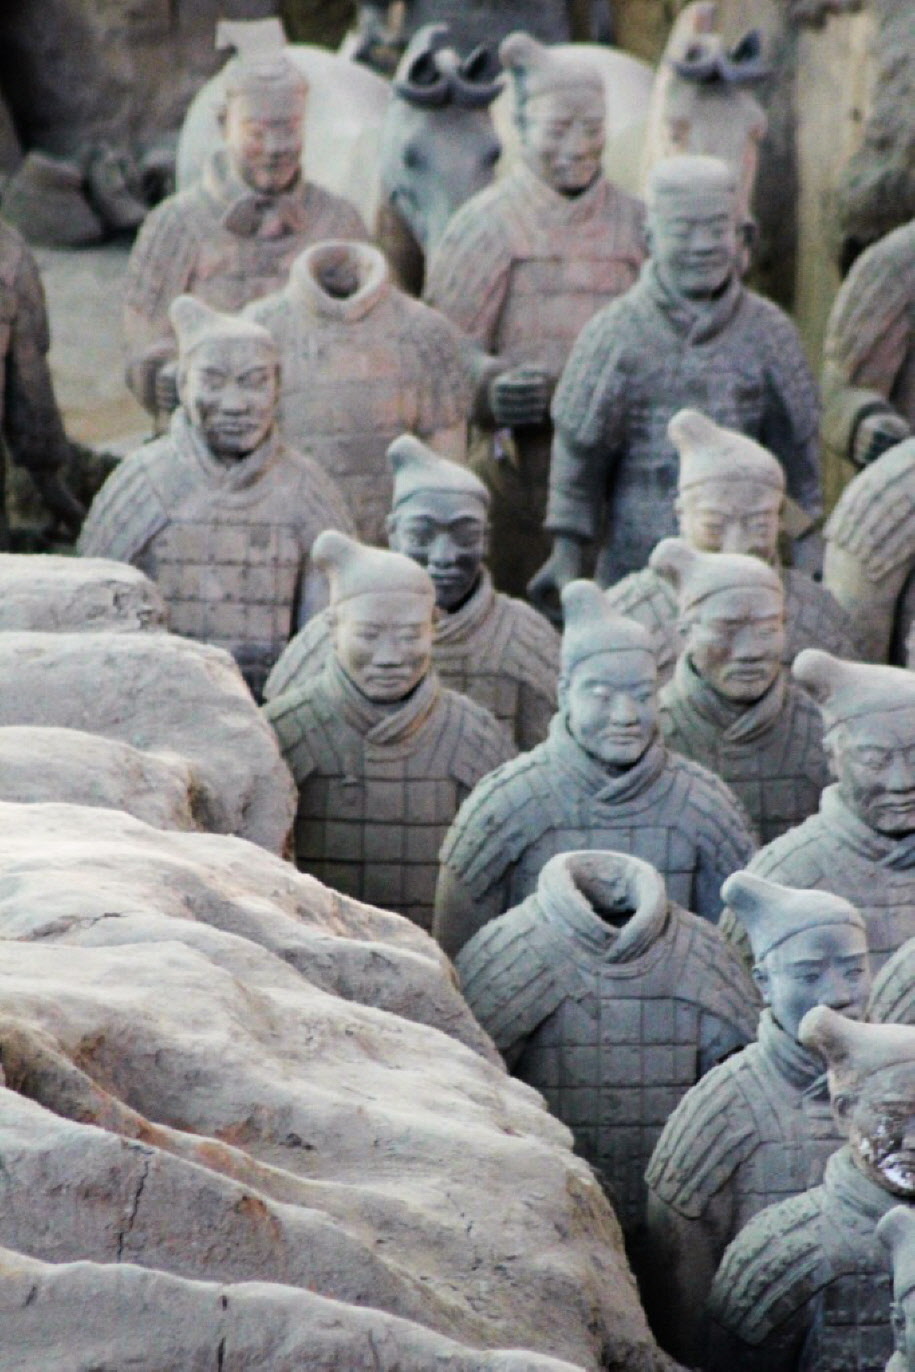 Die Terrakottaarmee - Die Herstellung der Terrakotta-Krieger begann vermutlich erst nachdem Qin Shihuangdi den Kaiserthron bestiegen hatte. Die tönerne Streitmacht besteht – im Vergleich zu Männern zur Zeit der Qin-Dynastie – aus überdurchschnittlich groß